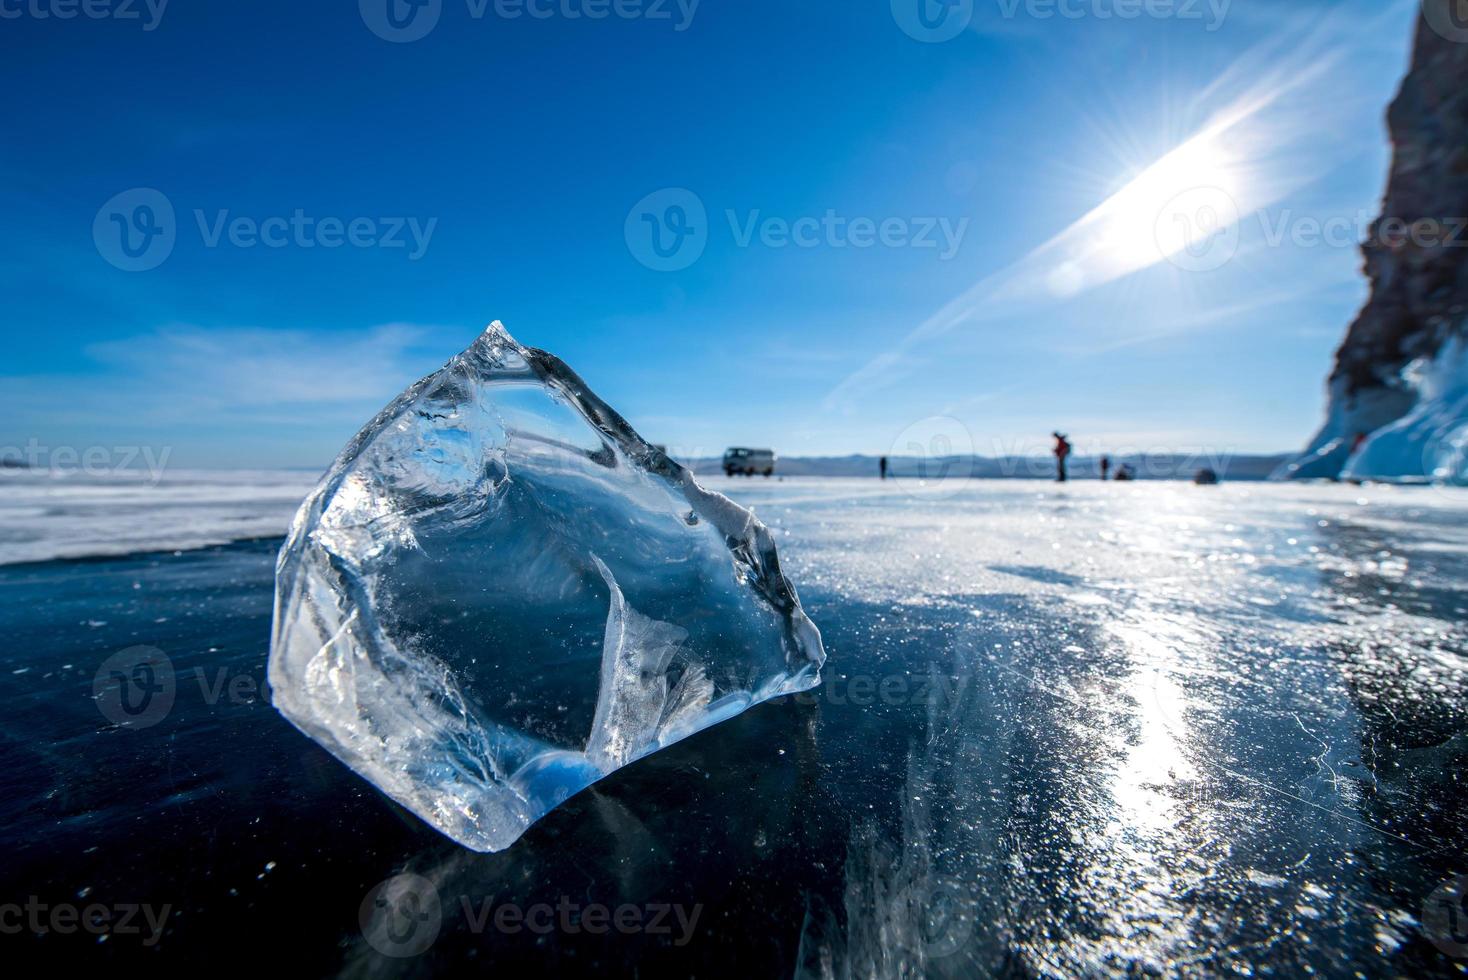 landskap av naturlig brytning is i frysta vatten på sjö baikal, Sibirien, Ryssland. foto